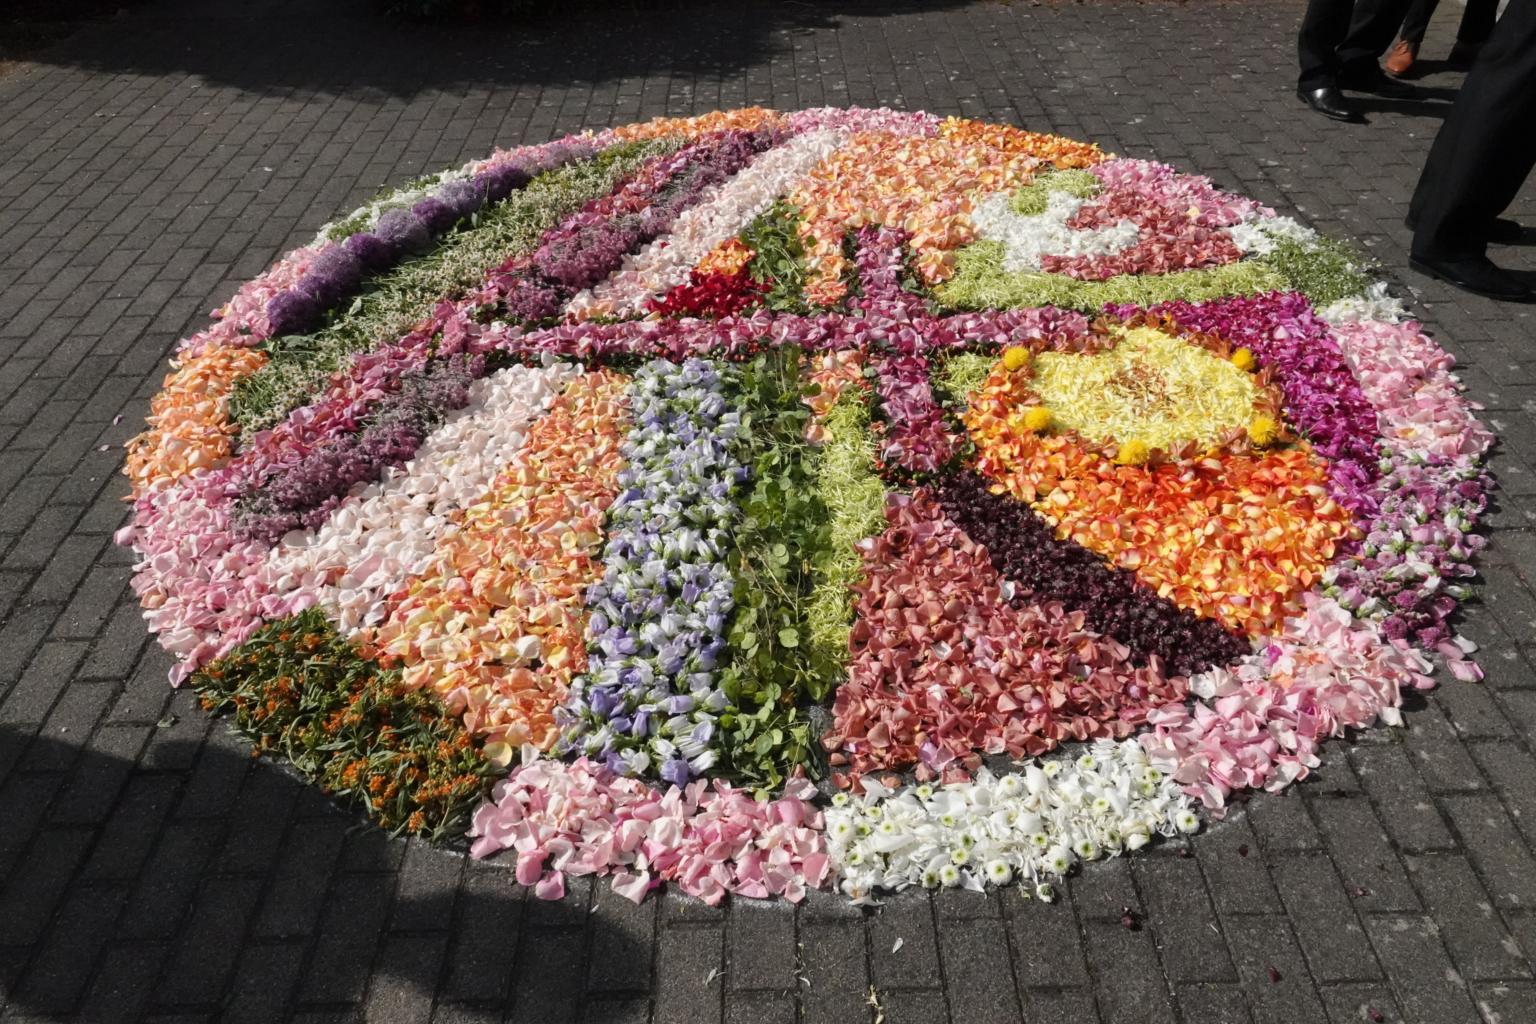 Oft werden schöne Blütenteppiche gelegt - die Kinder sind eingeladen Blüten mitzubringen und auf dem Weg zu verstreuen (c) Peter Tanke